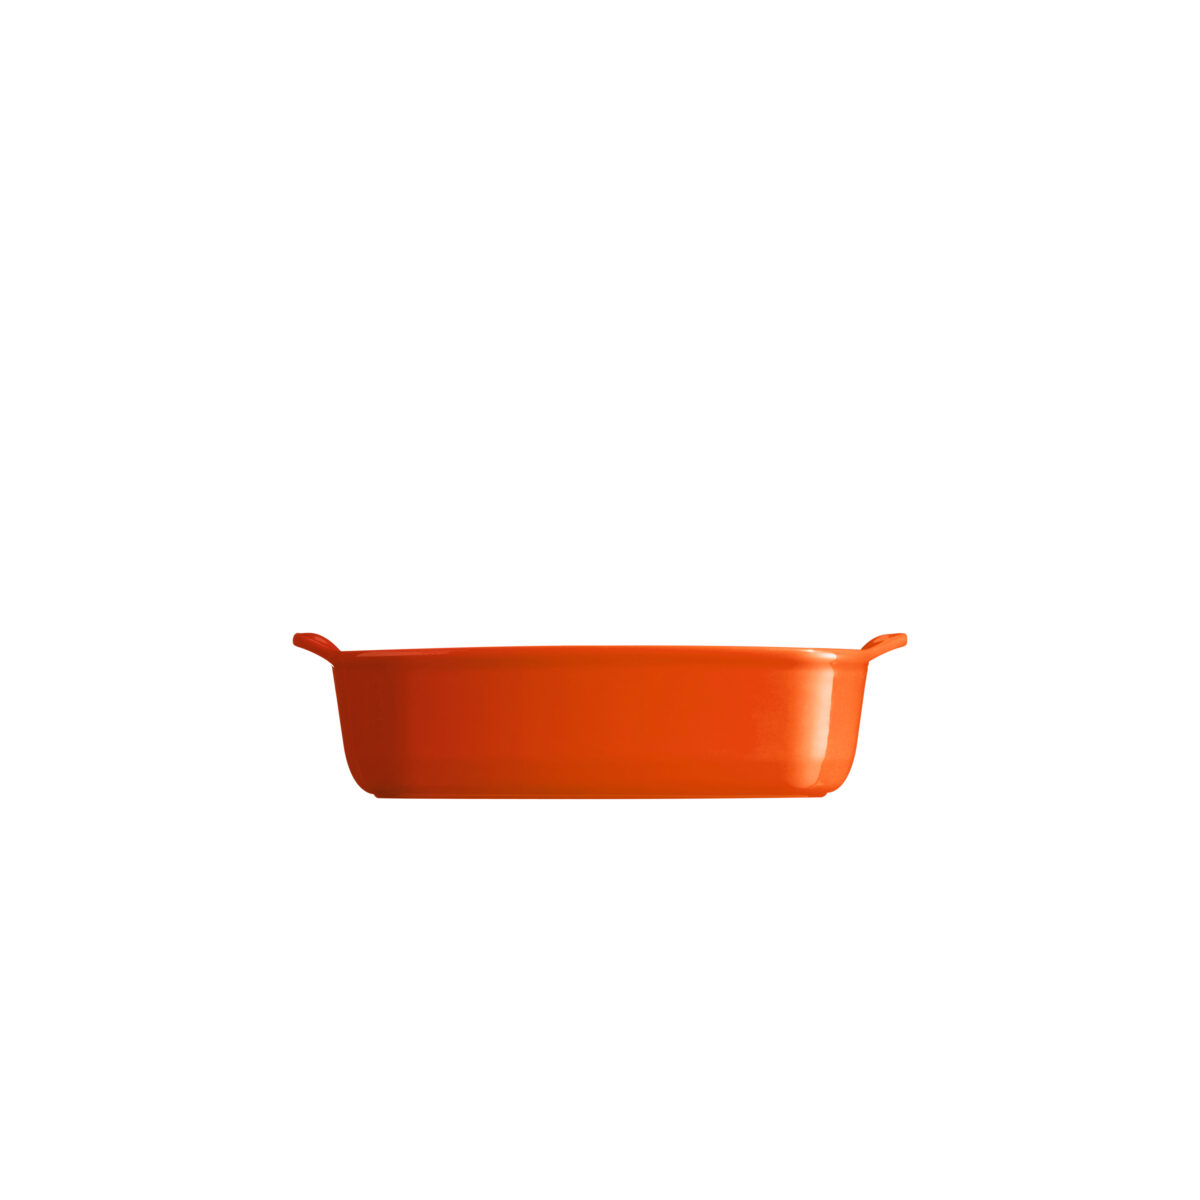 Керамична тава EMILE HENRY INDIVIDUAL OVEN DISH - 22 х 15 см, цвят оранжев